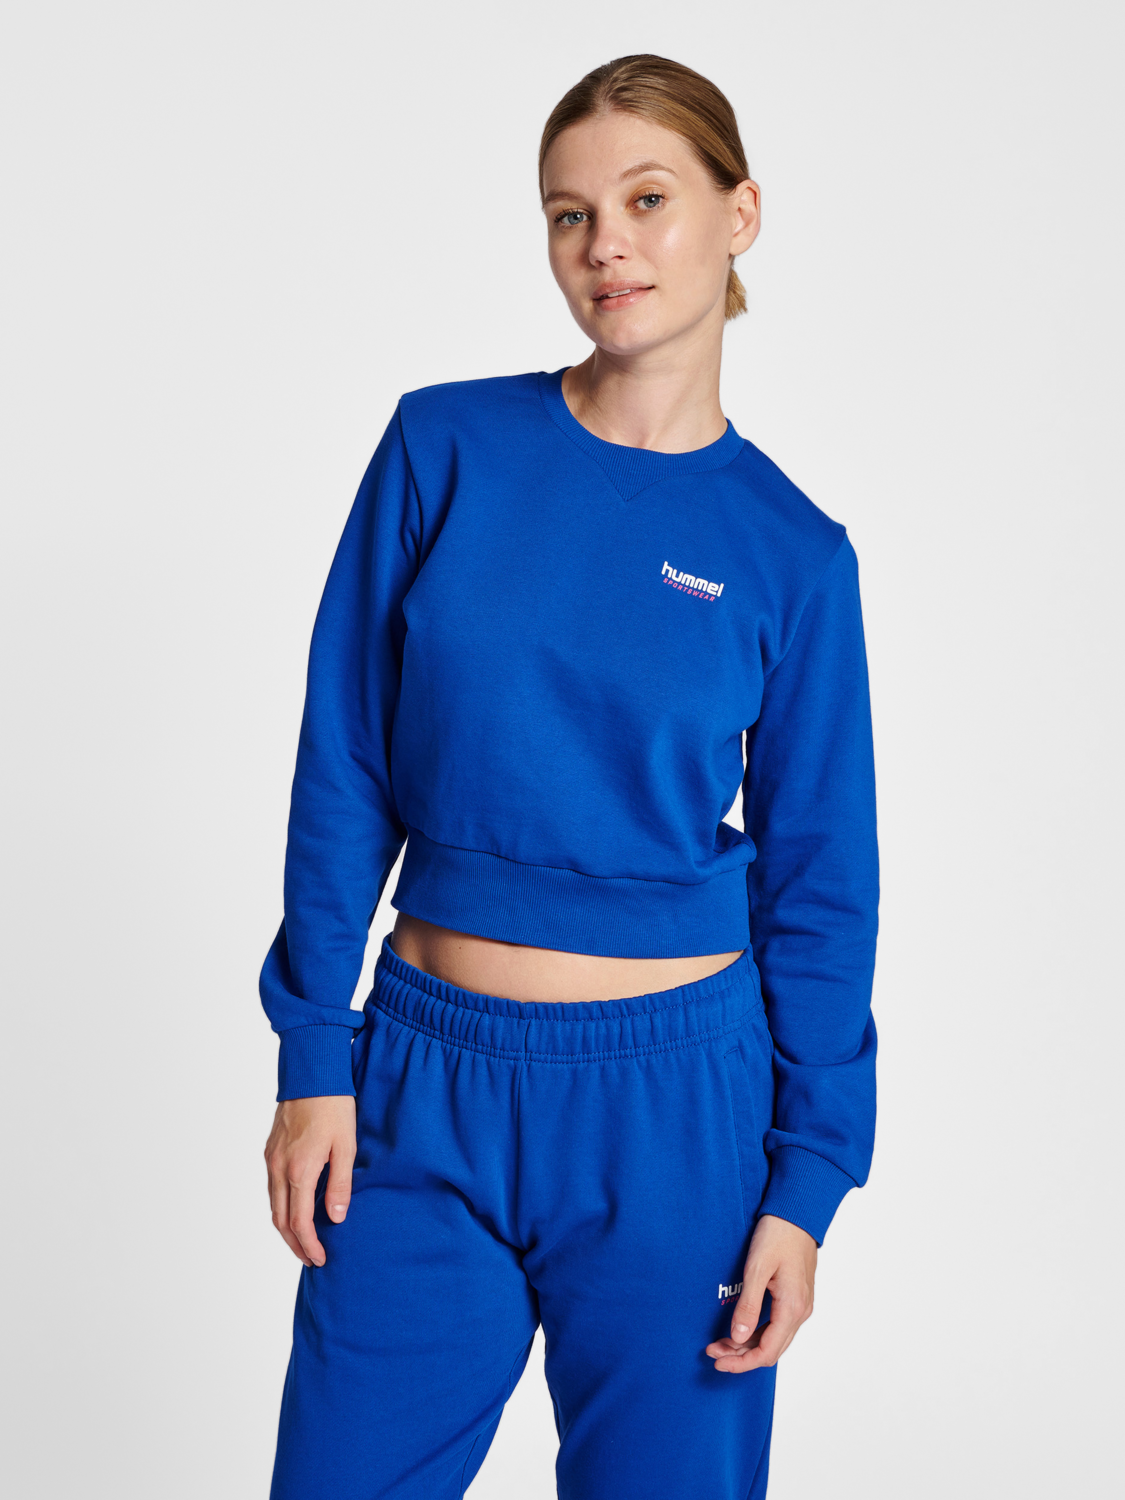 Sweat-Shirt Femme Uni Majorelle Blue - Sweat-Shirt Basic BIO - Lapolemik